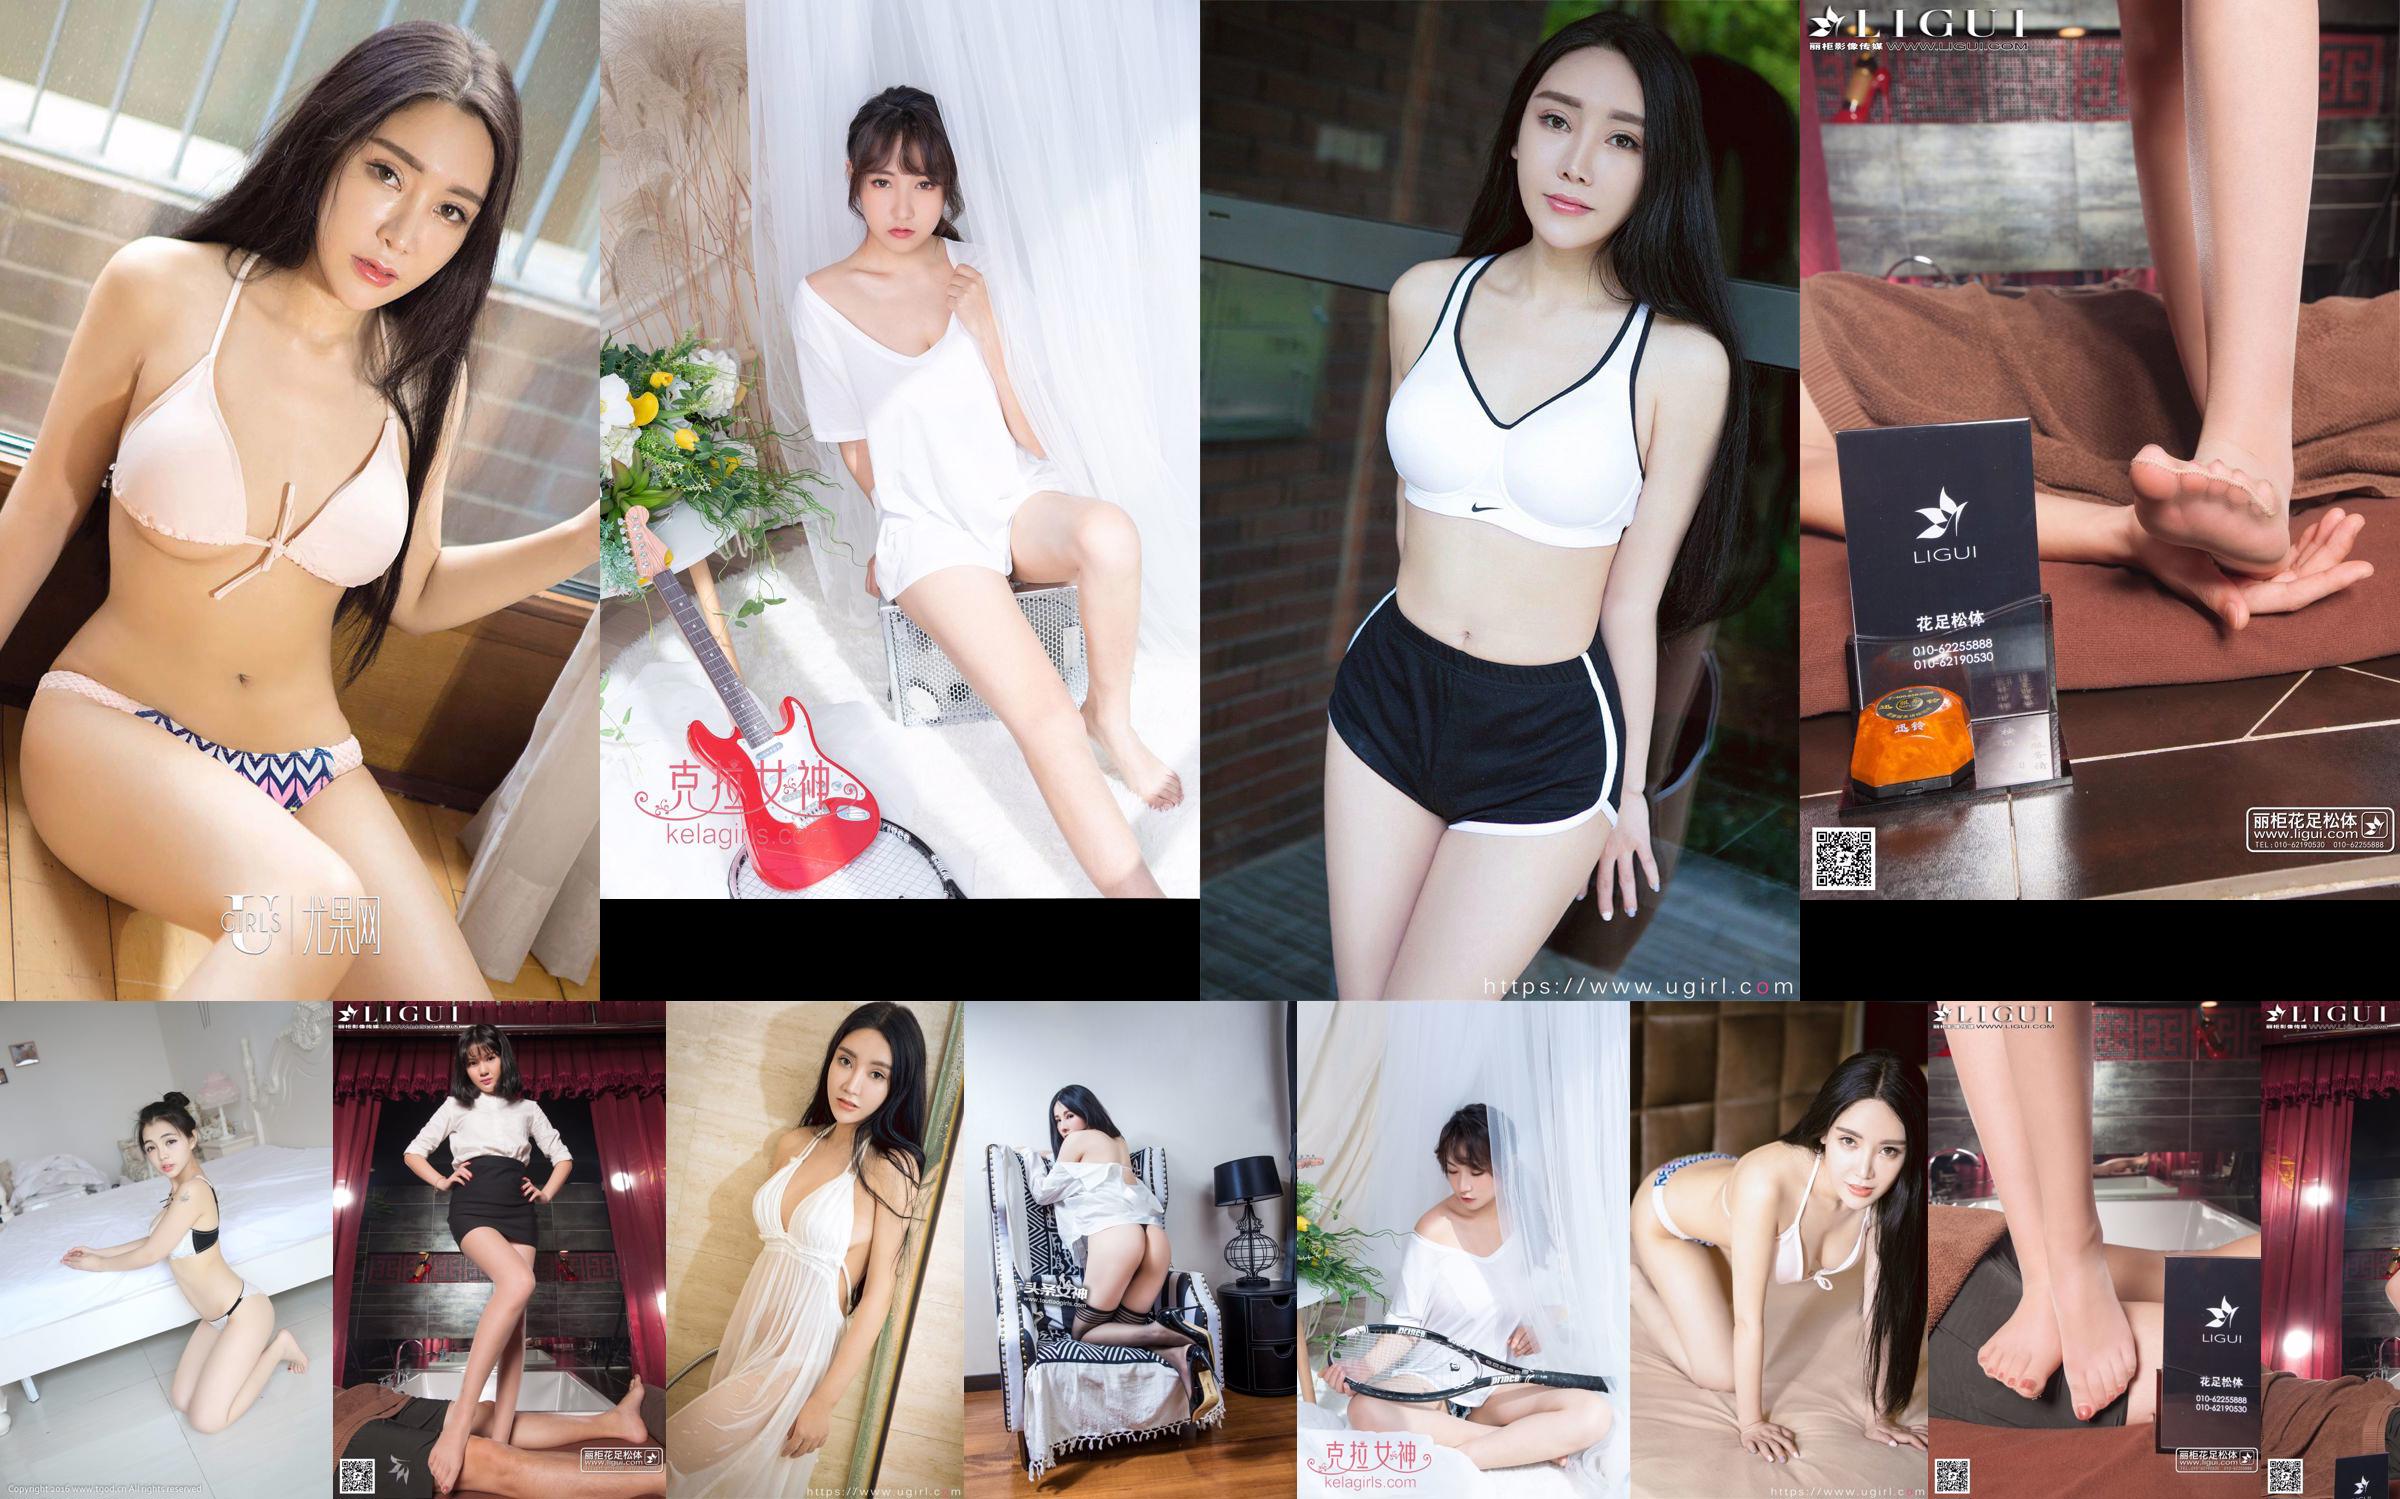 Model YOYO "Seidenfußmassage" [丽 柜 LiGui] Foto von schönen Beinen und Jadefüßen No.928b0c Seite 21